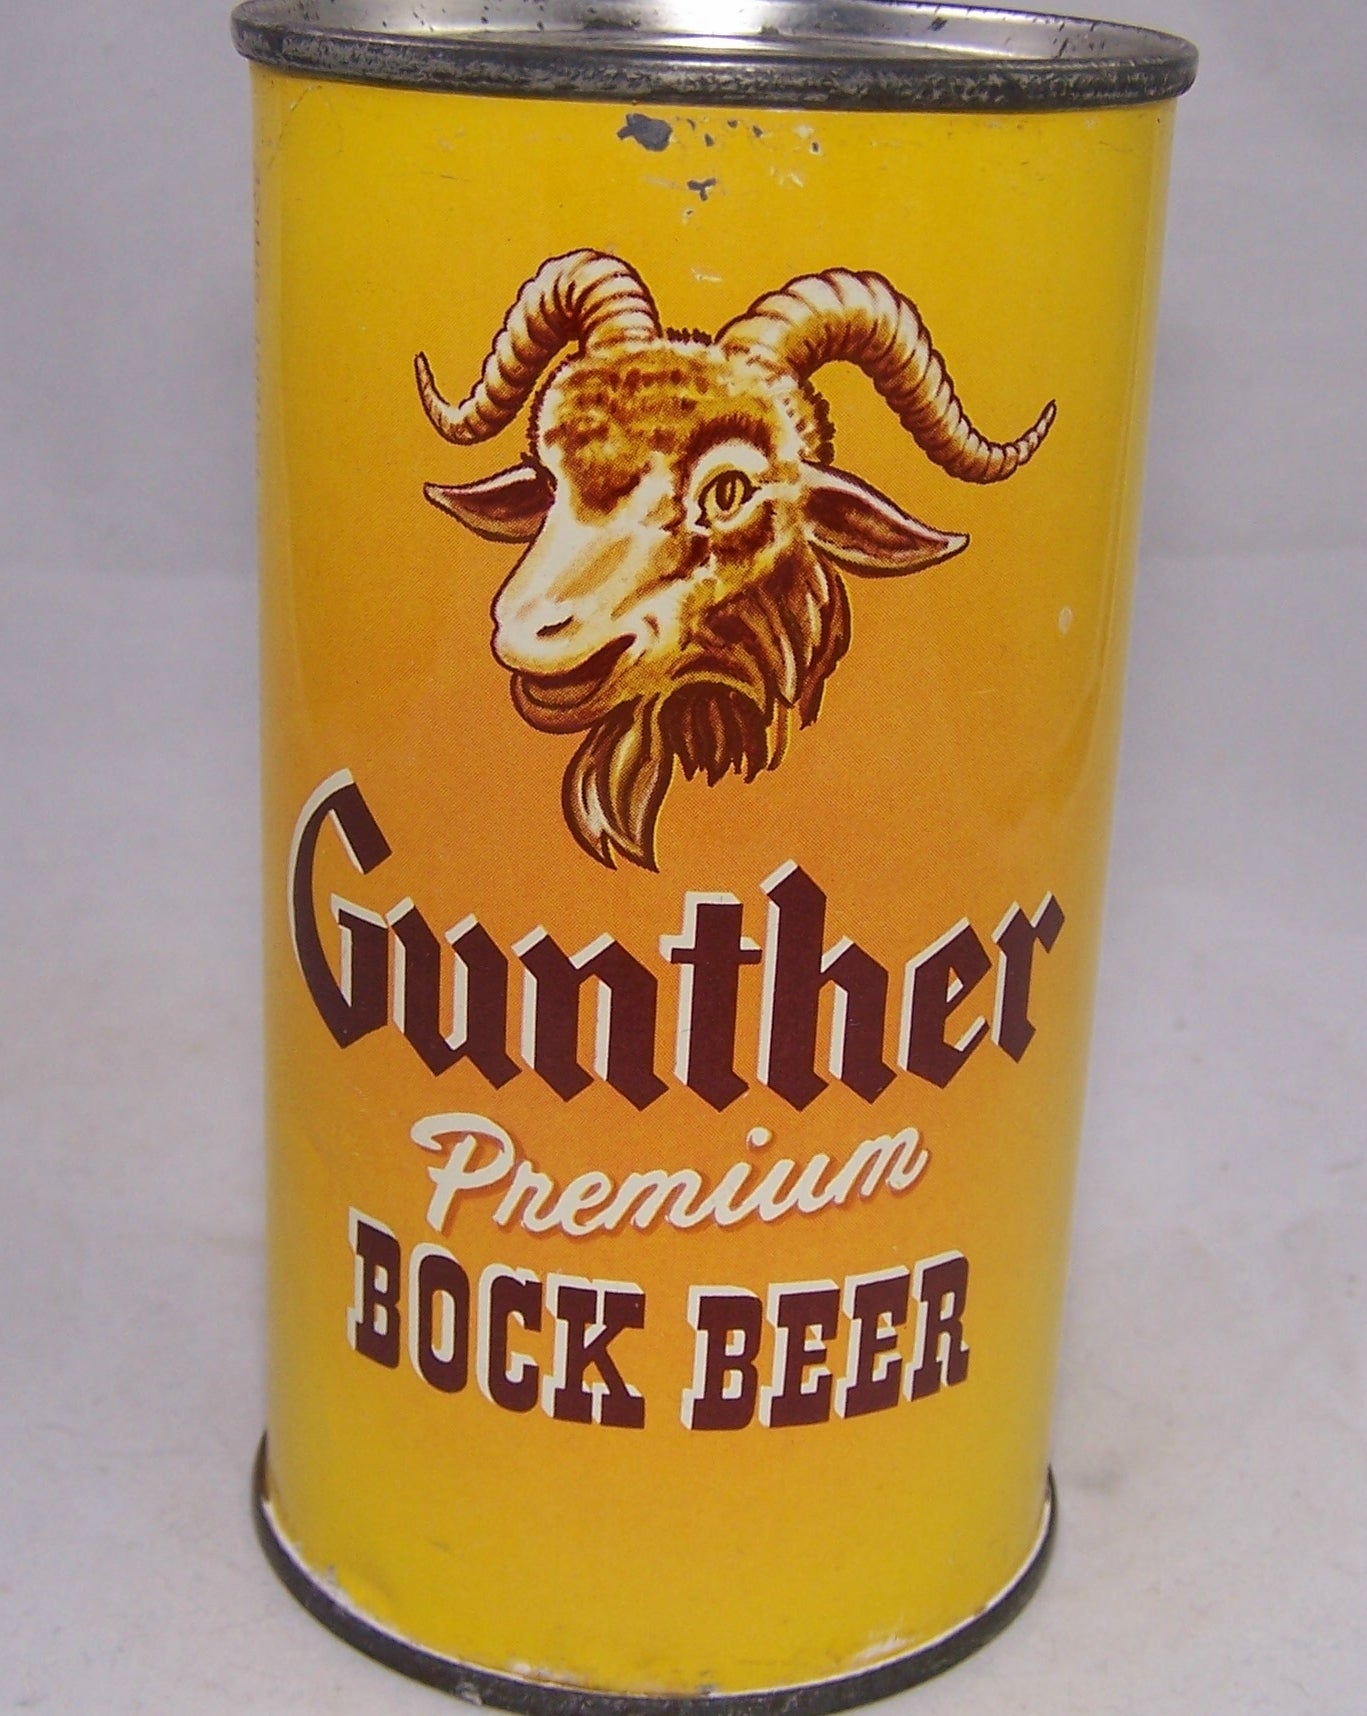 Gunther Premium Bock Beer, USBC 78-31, Grade 1 Sold on 09/10/17